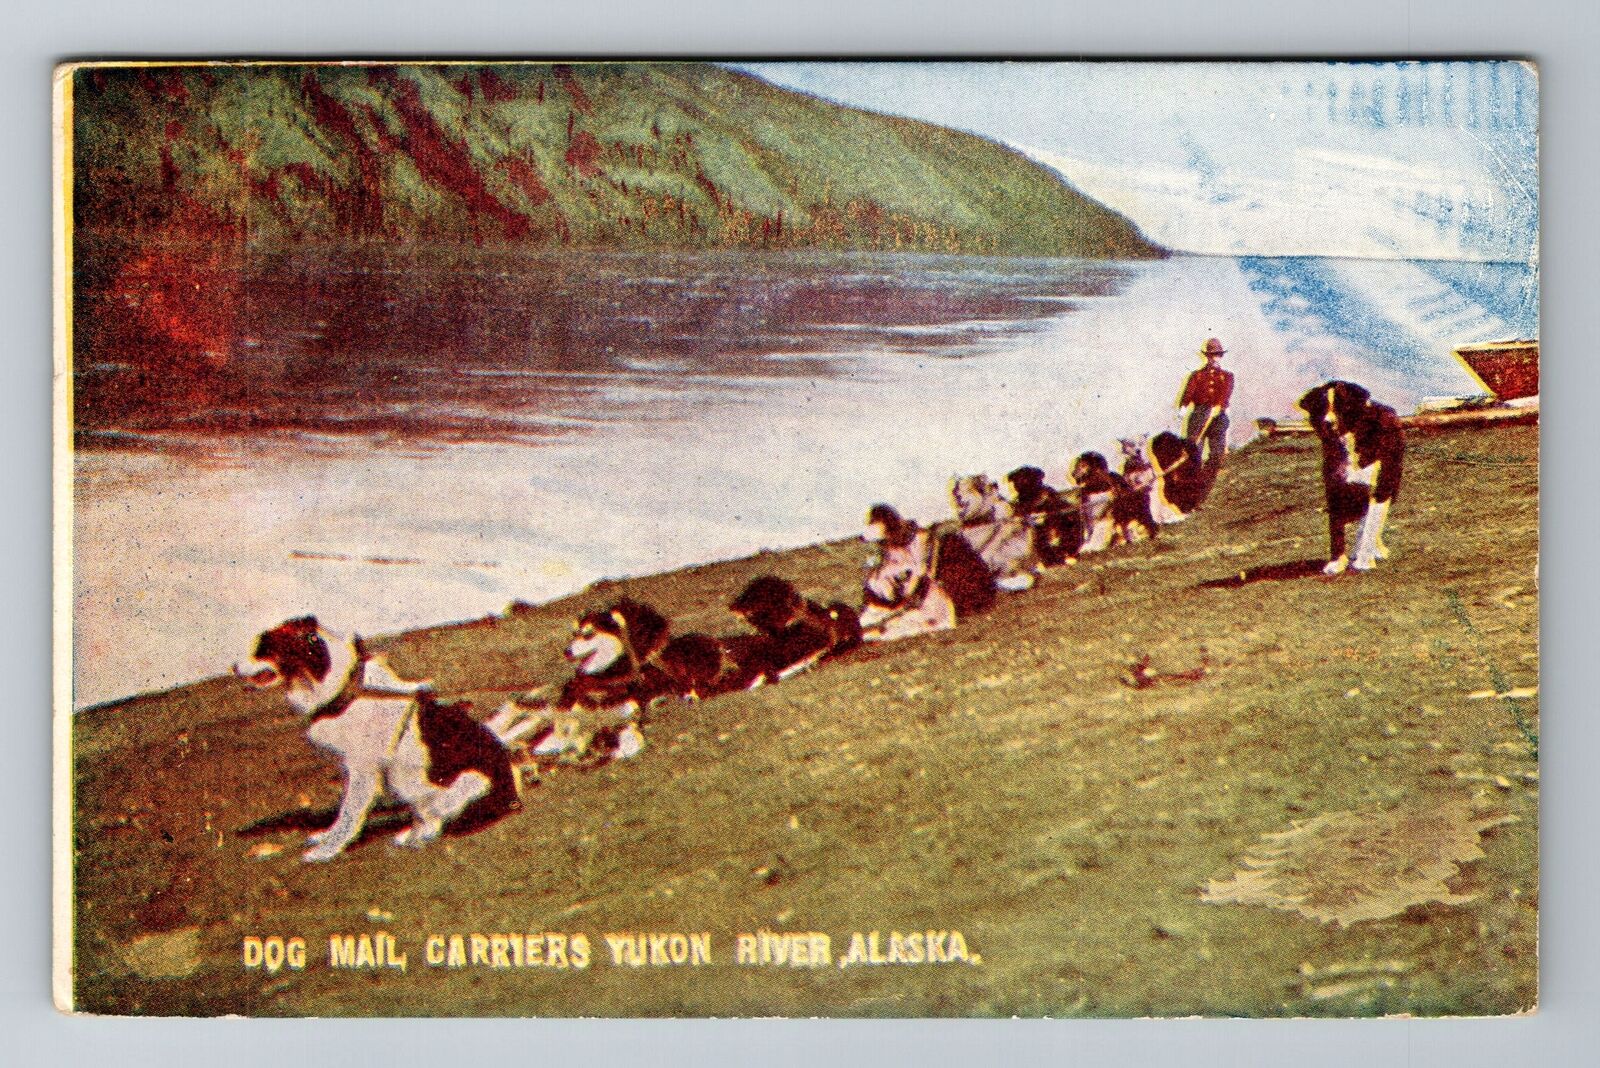 Yukon River, AK-Alaska, Dog Mail Carriers Antique, Vintage Souvenir Postcard